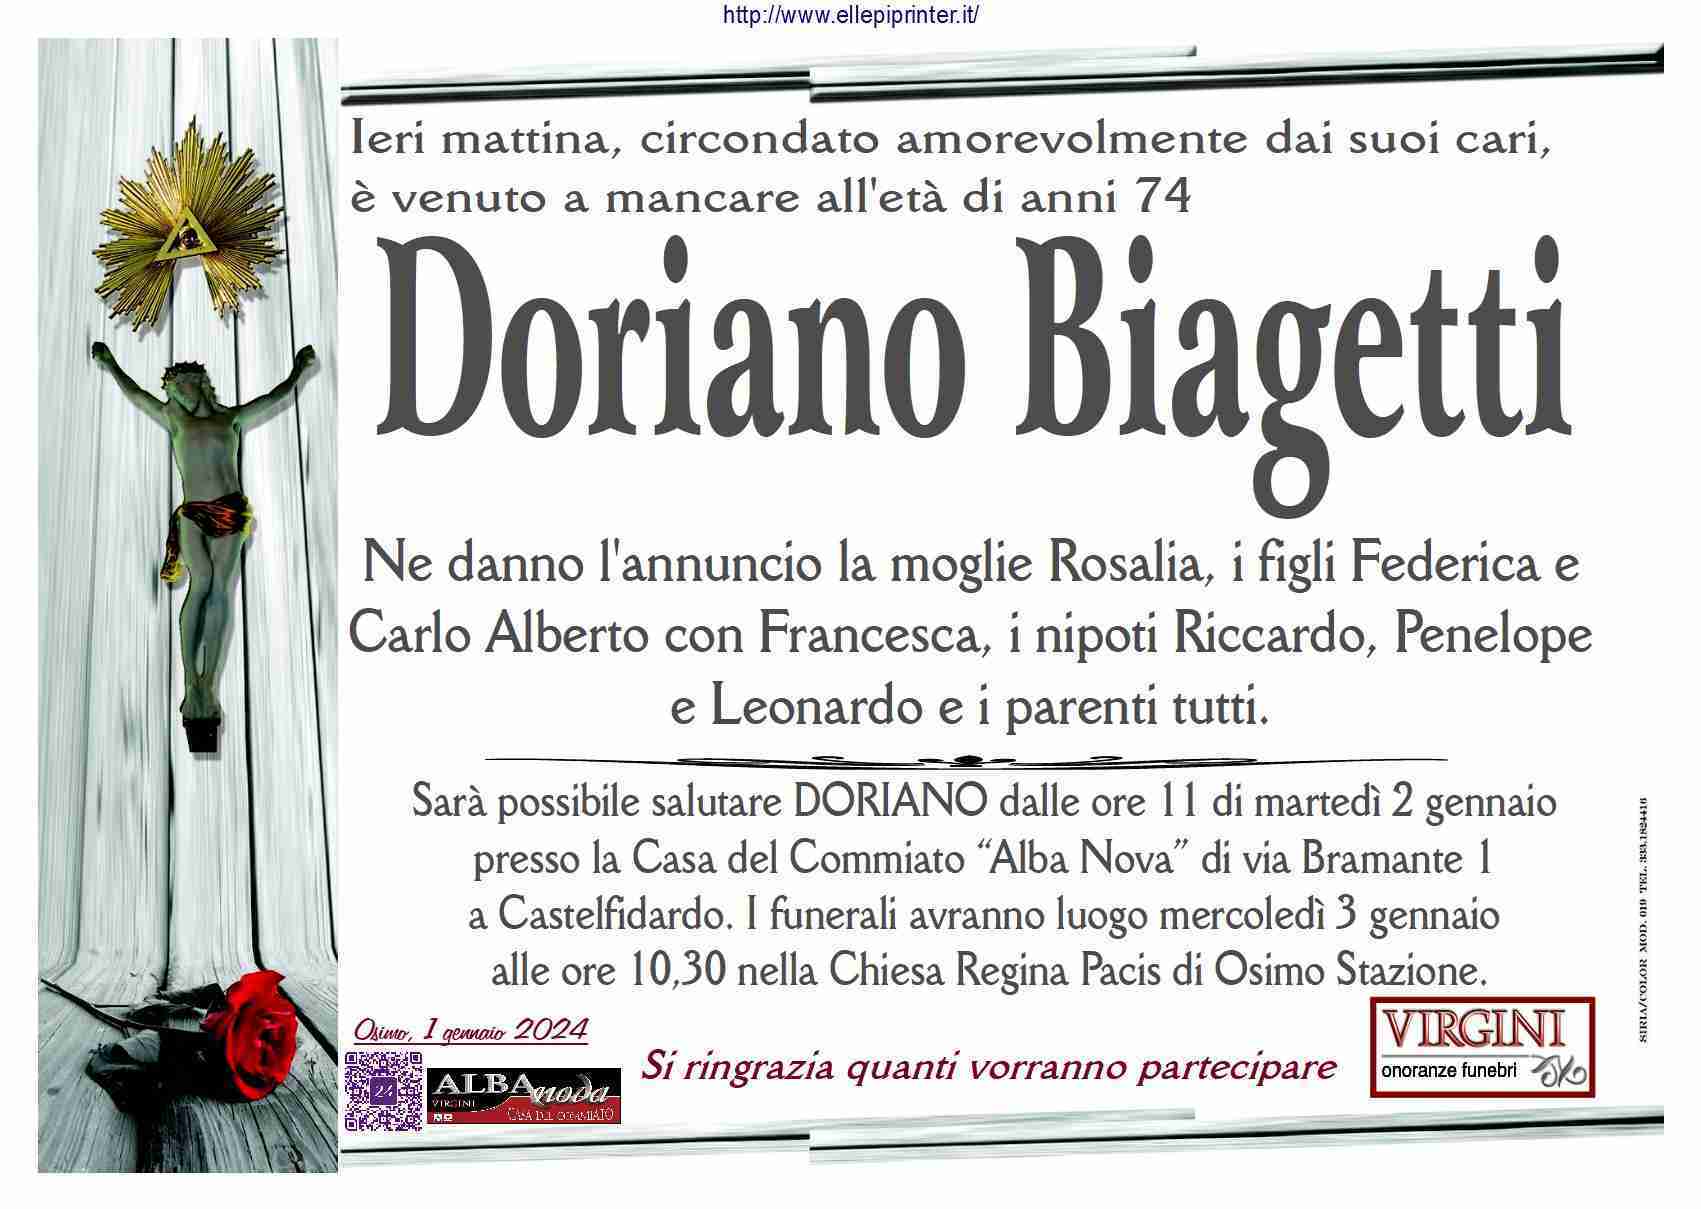 Doriano Biagetti